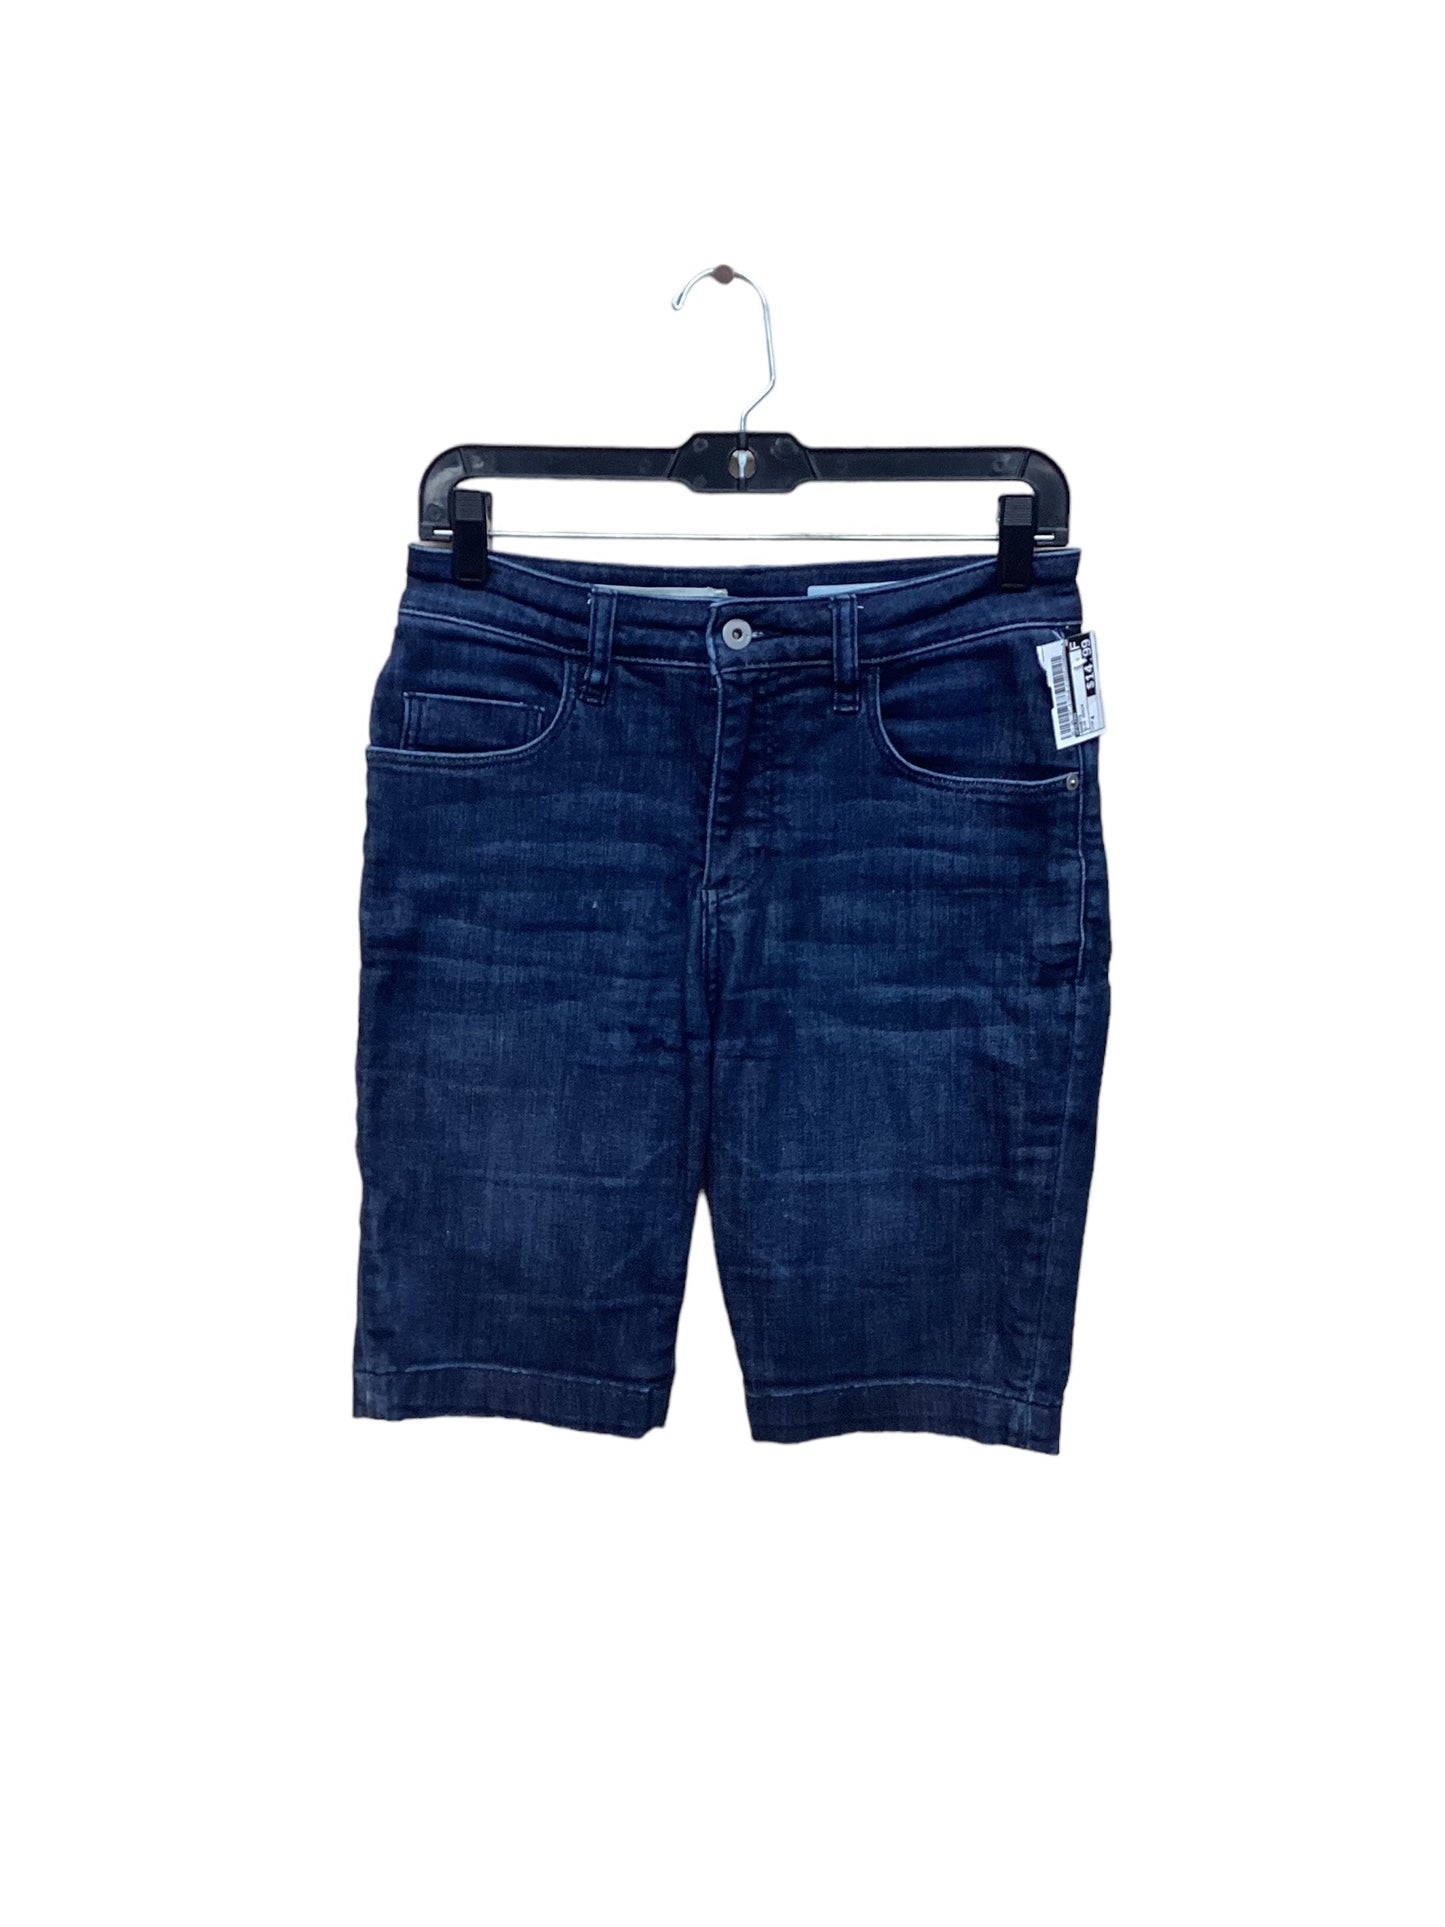 Blue Denim Shorts Pilcro, Size 4